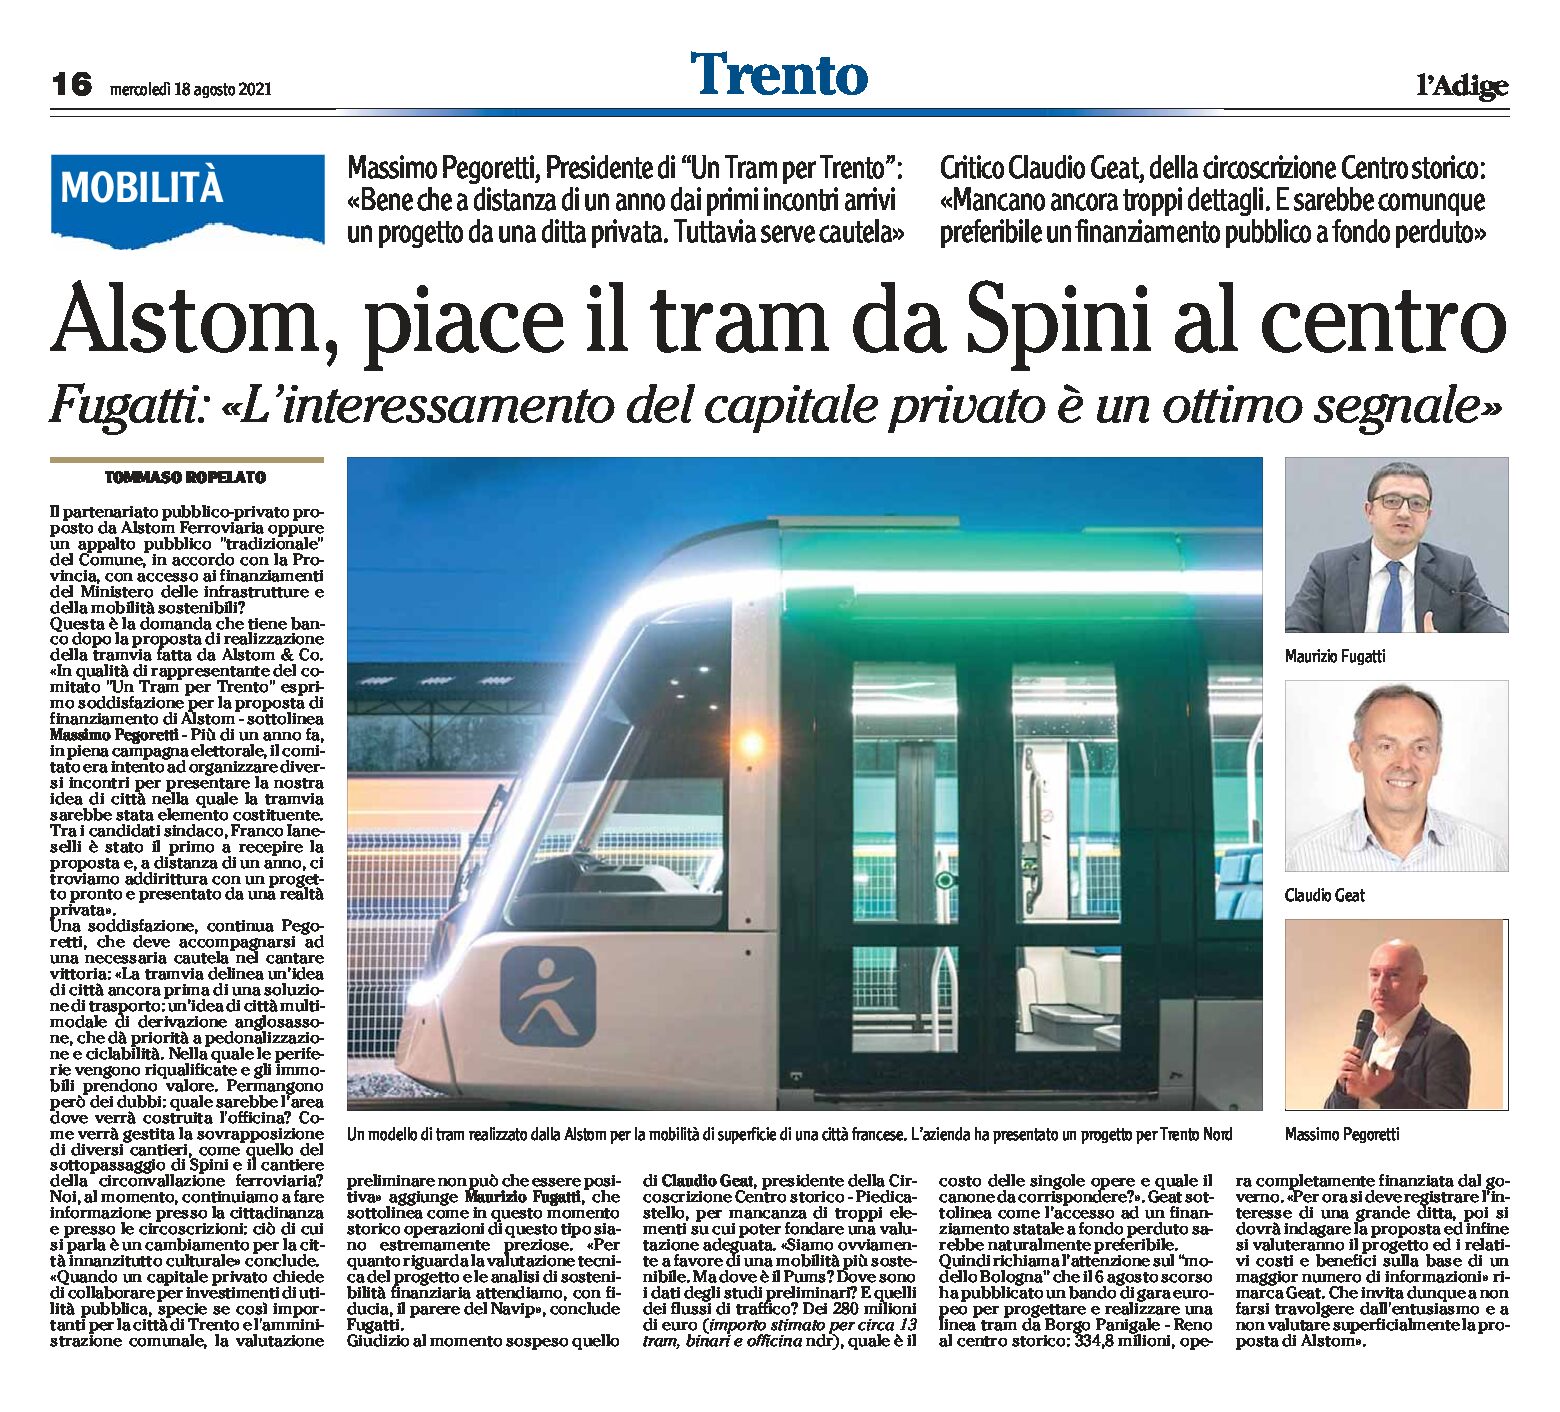 Trento, mobilità: Alstom, piace il tram da Spini al centro